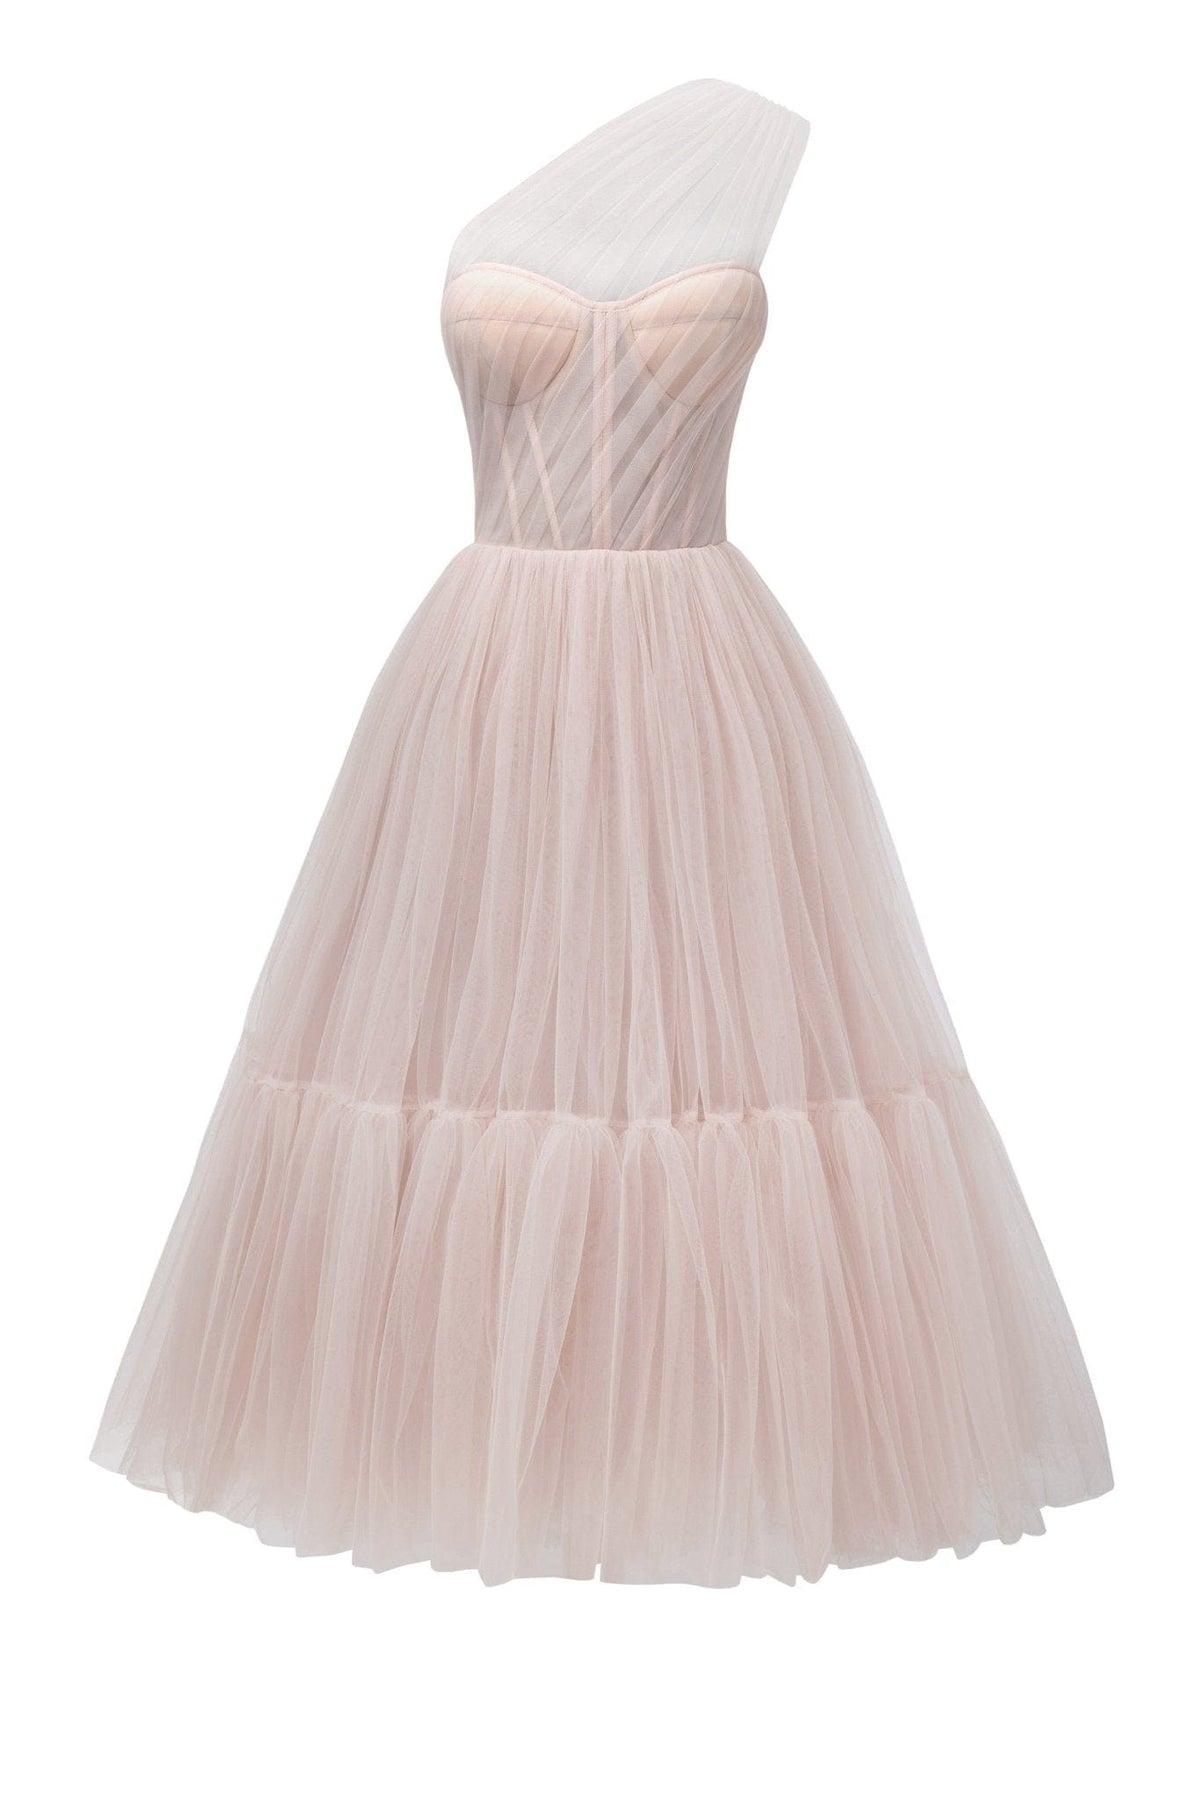 Misty Rose One-Shoulder Cocktail Tulle Dress Milla Dresses - USA ...